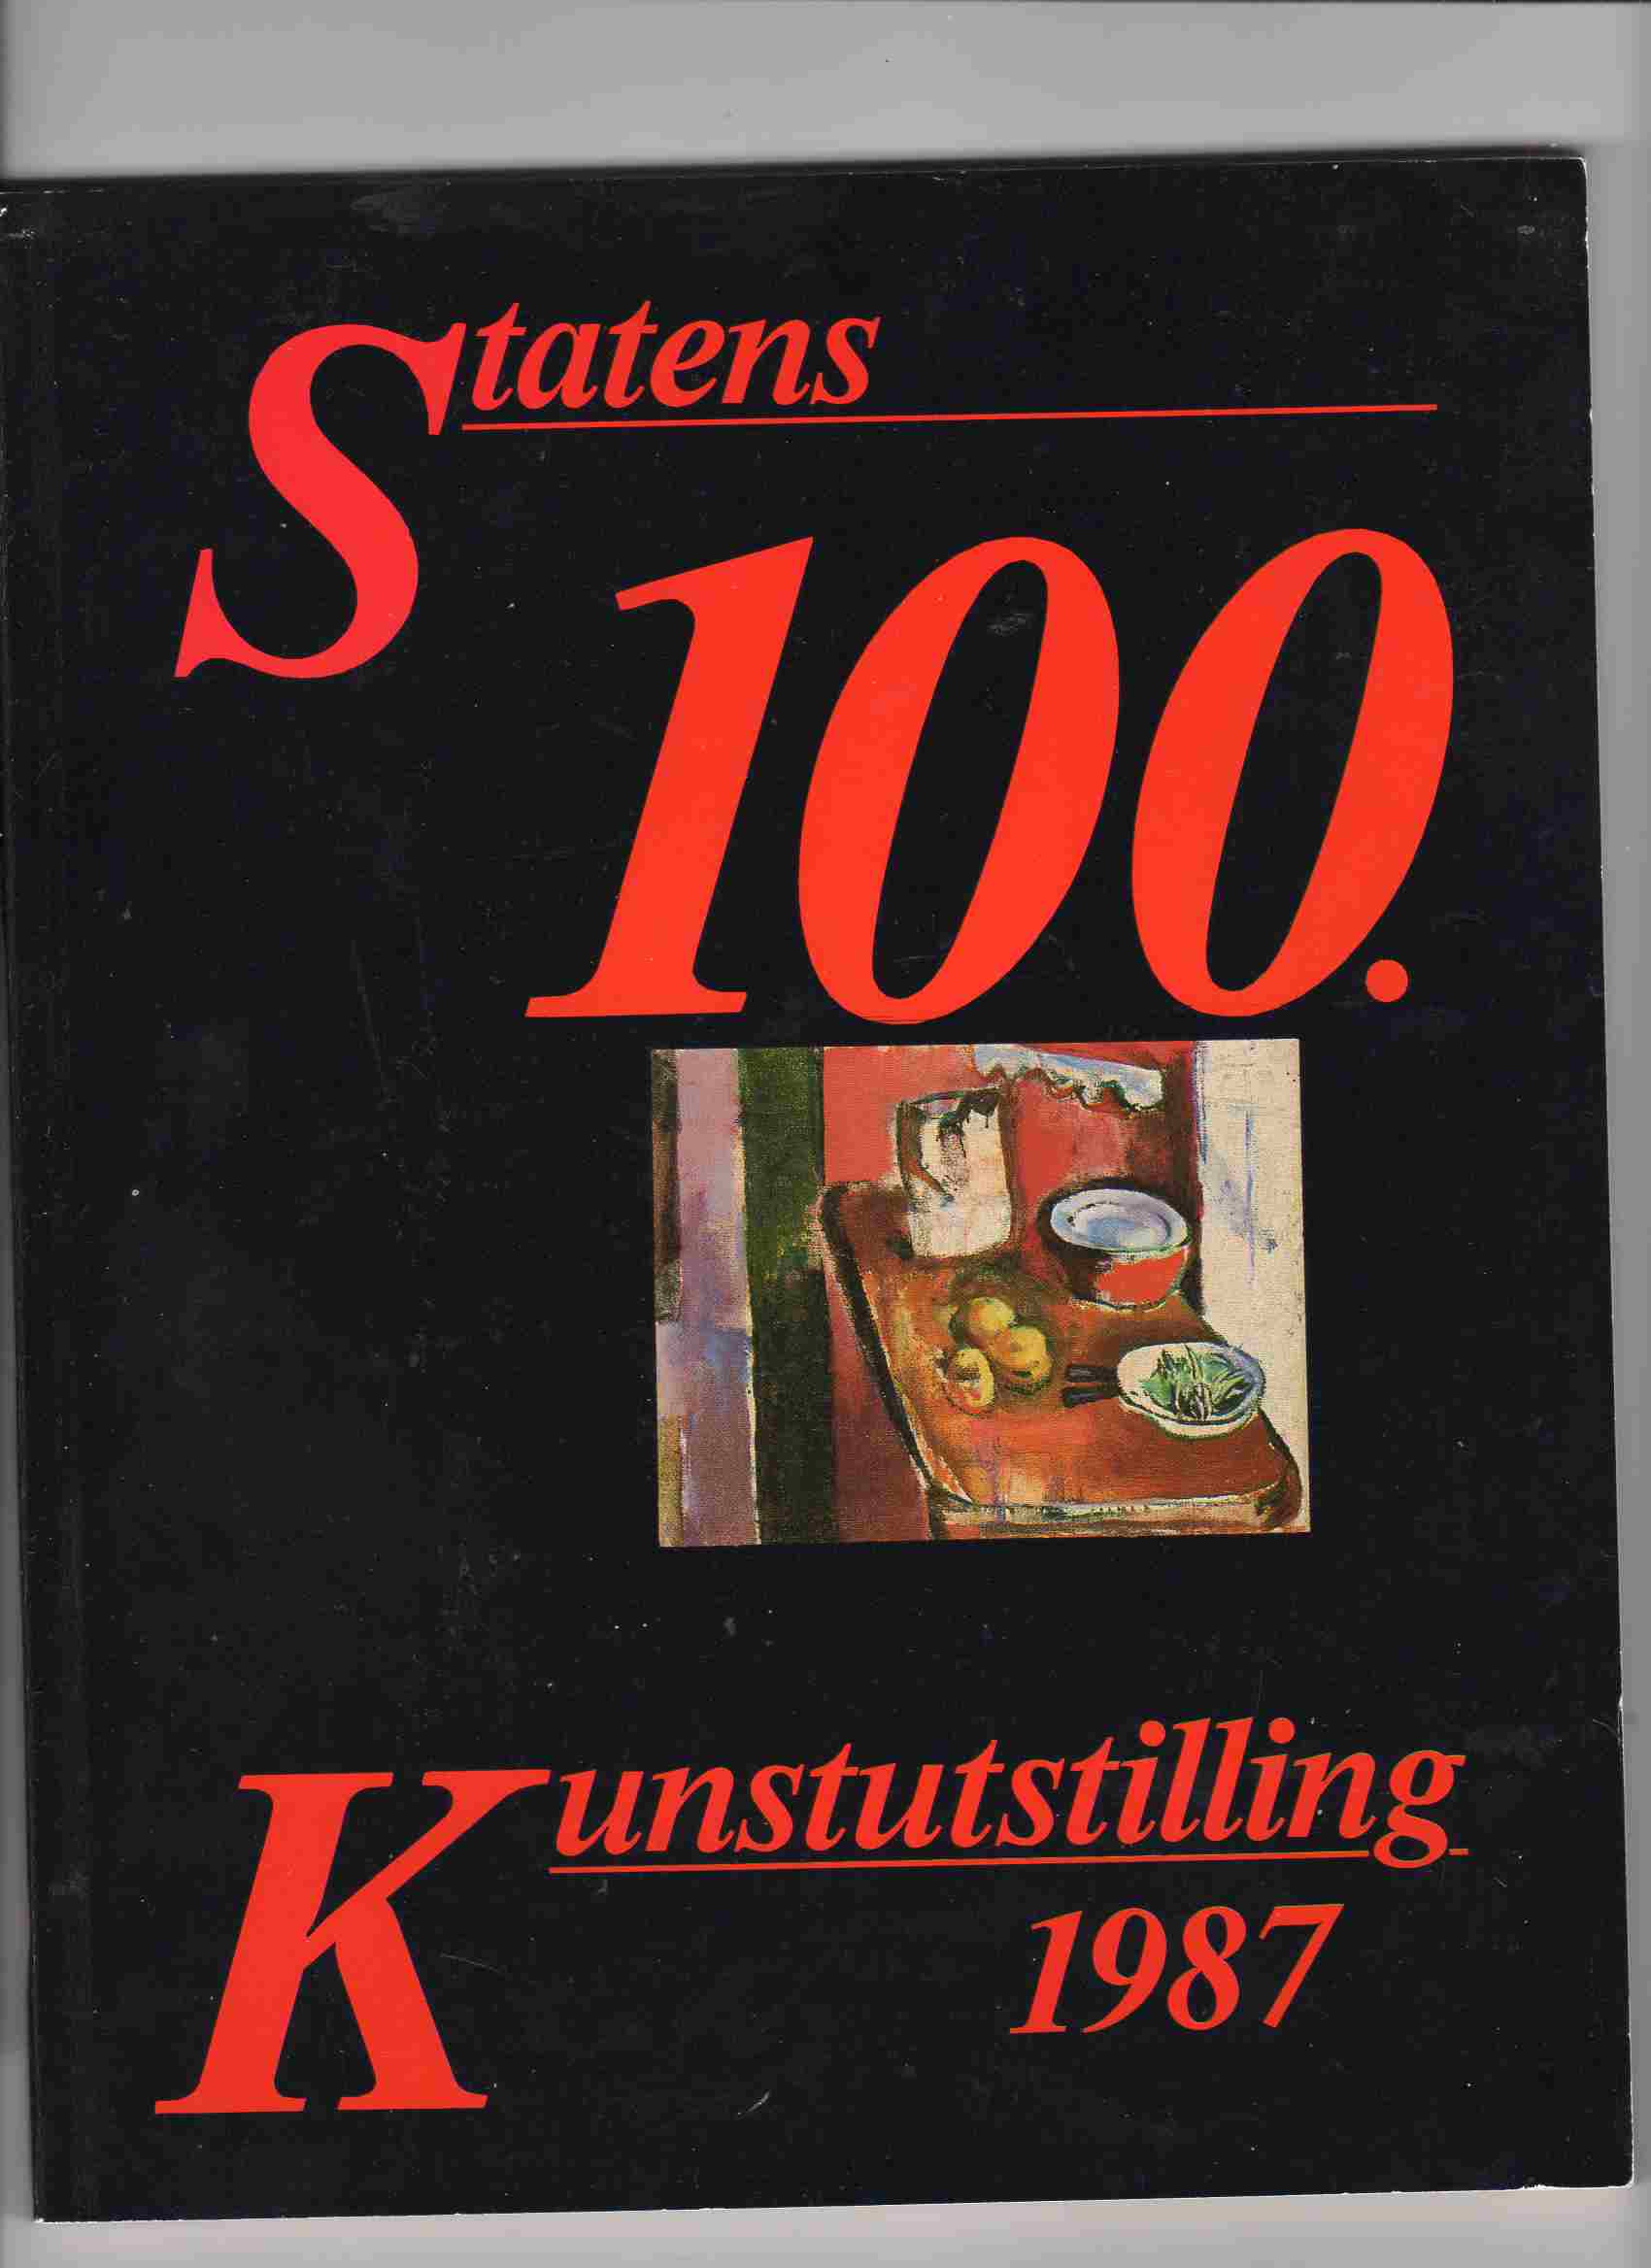 Statens 100 kunstutstilling 1987